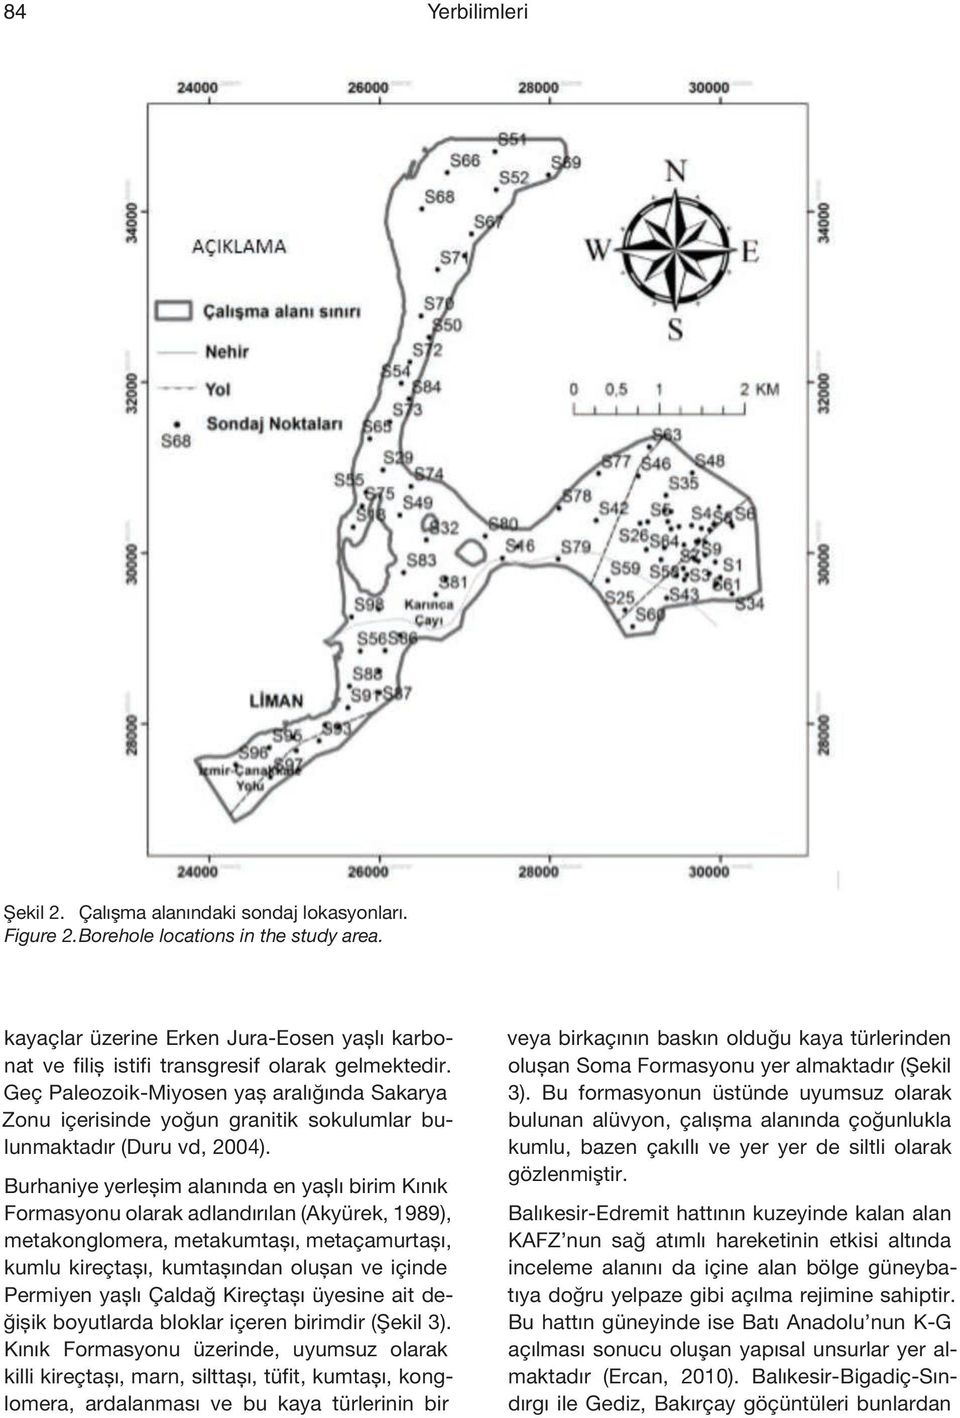 Geç Paleozoik-Miyosen yaş aralığında Sakarya Zonu içerisinde yoğun granitik sokulumlar bulunmaktadır (Duru vd, 2004).